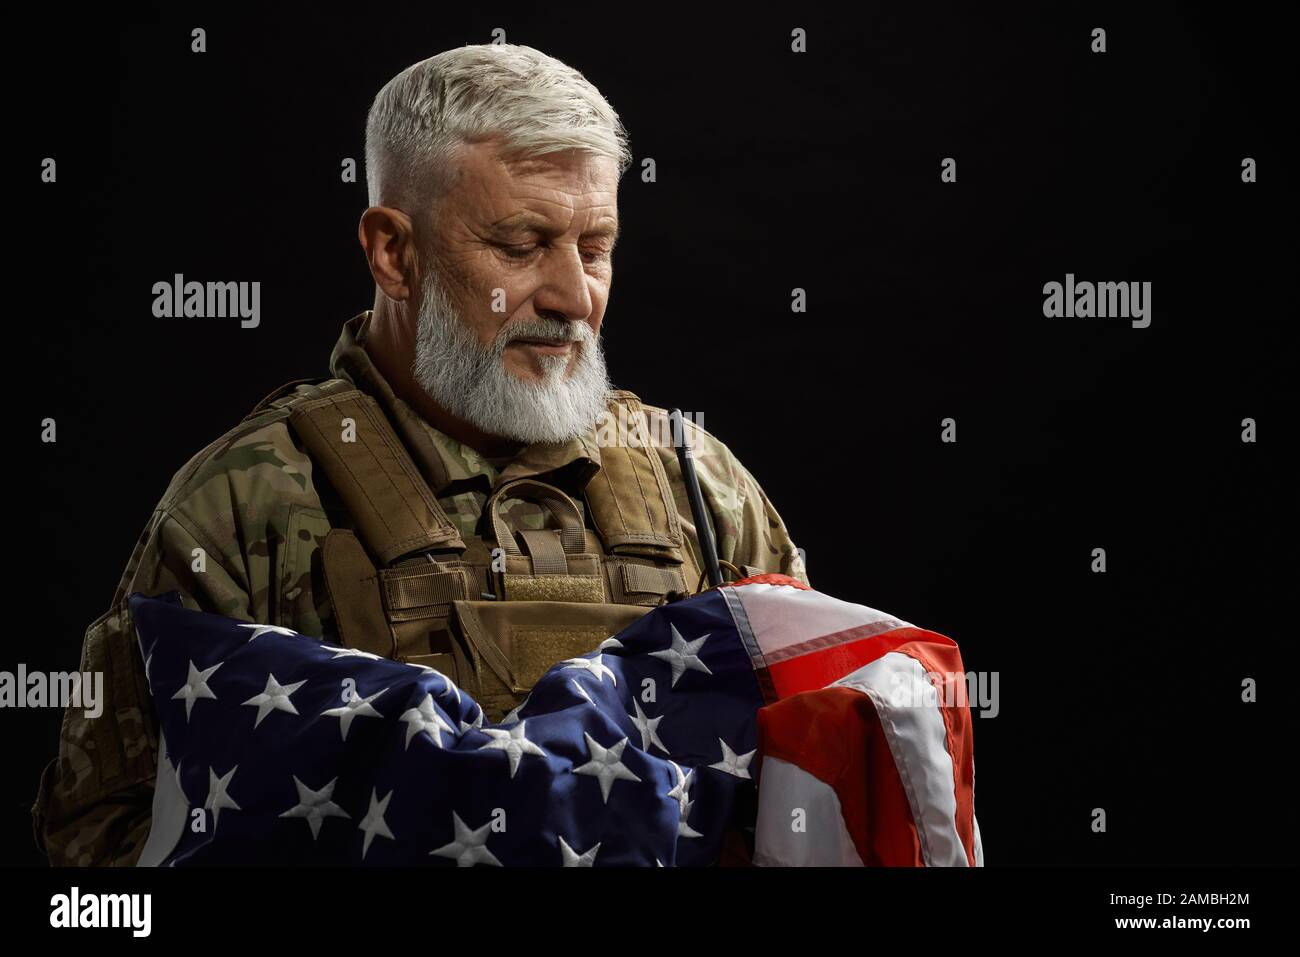 Vista frontale del veterano militare americano con bandiera a braccio. Ritratto di vecchio ufficiale maschile orgoglioso in uniforme camouflage posa in un'atmosfera buia. Concetto di militare, patriottismo. Foto Stock